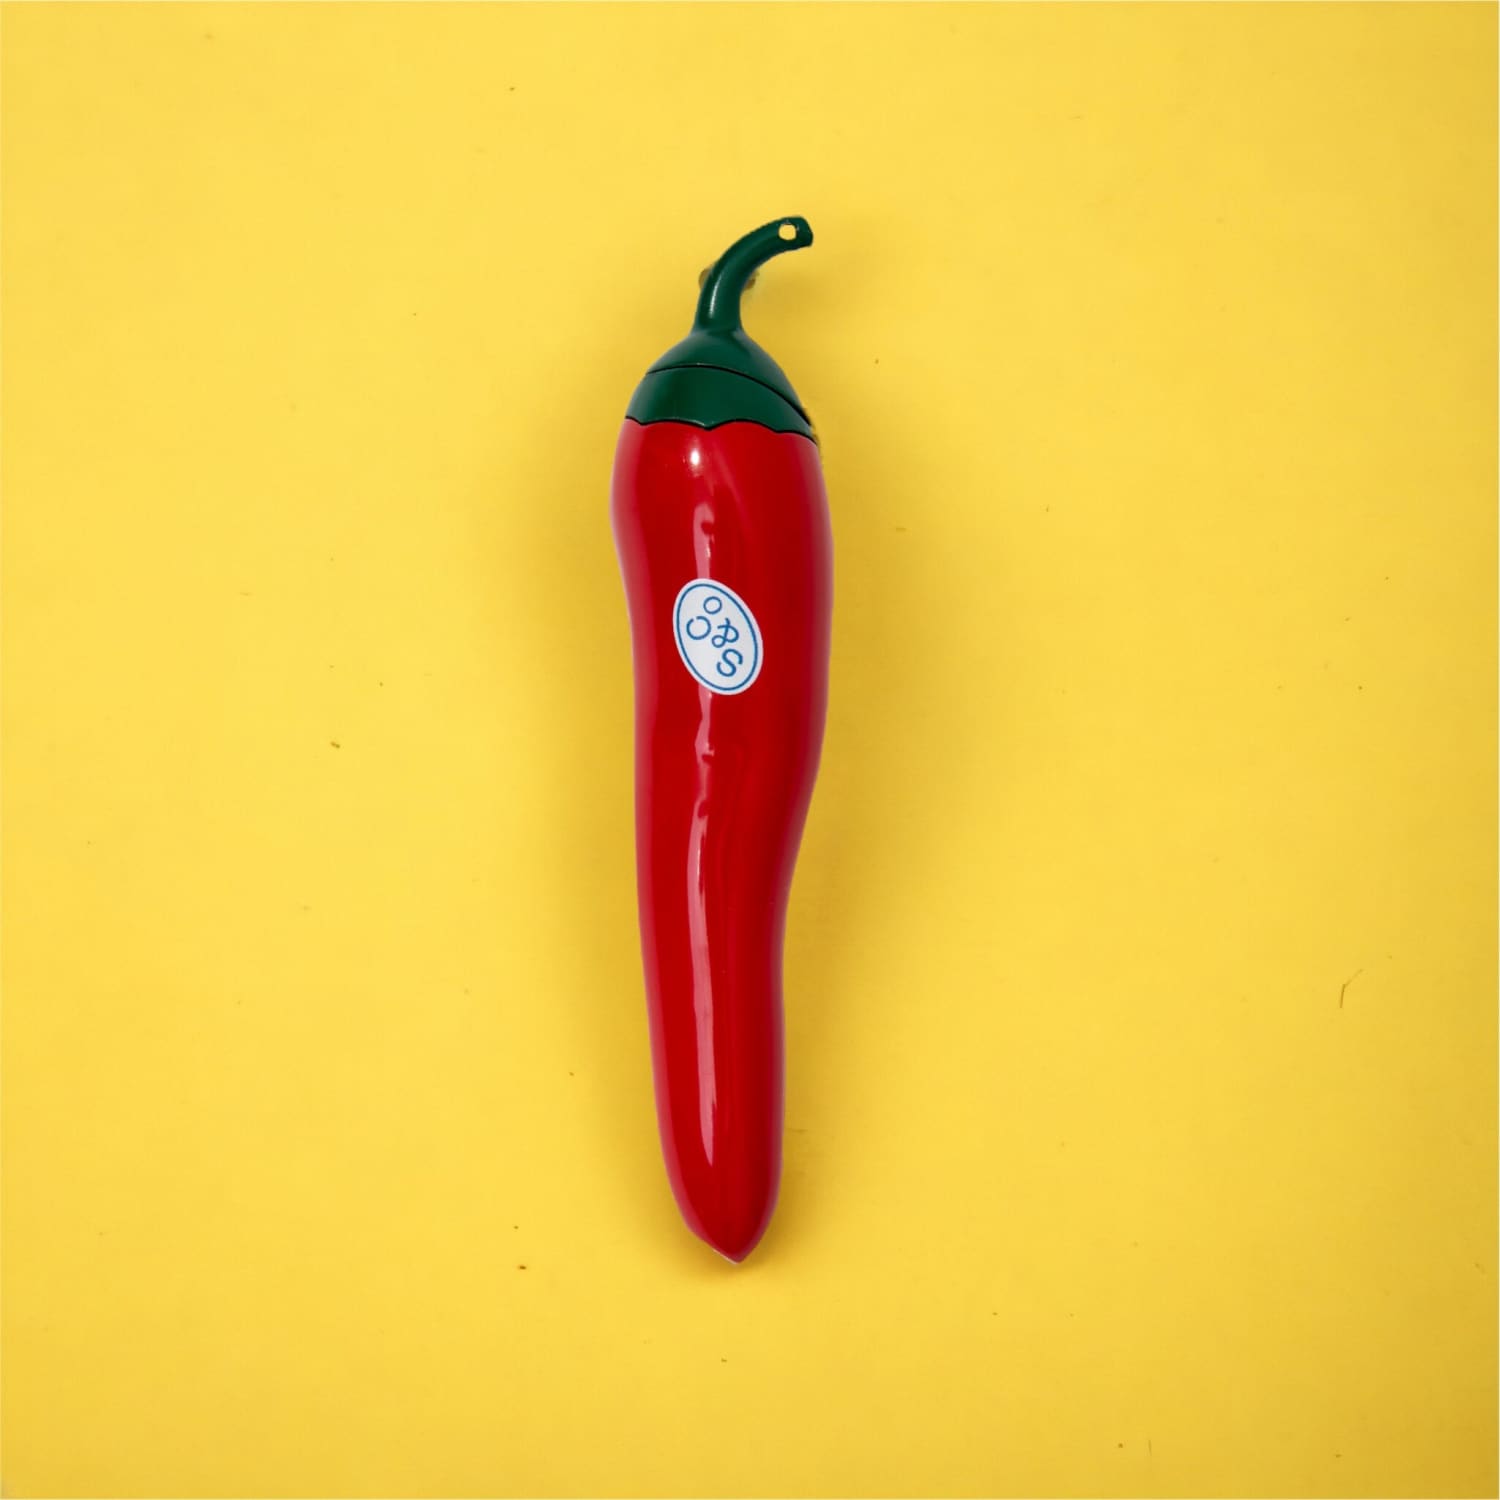 Chili Pepper Lighter 0523 - Aesthetic Lighter - Novelty -